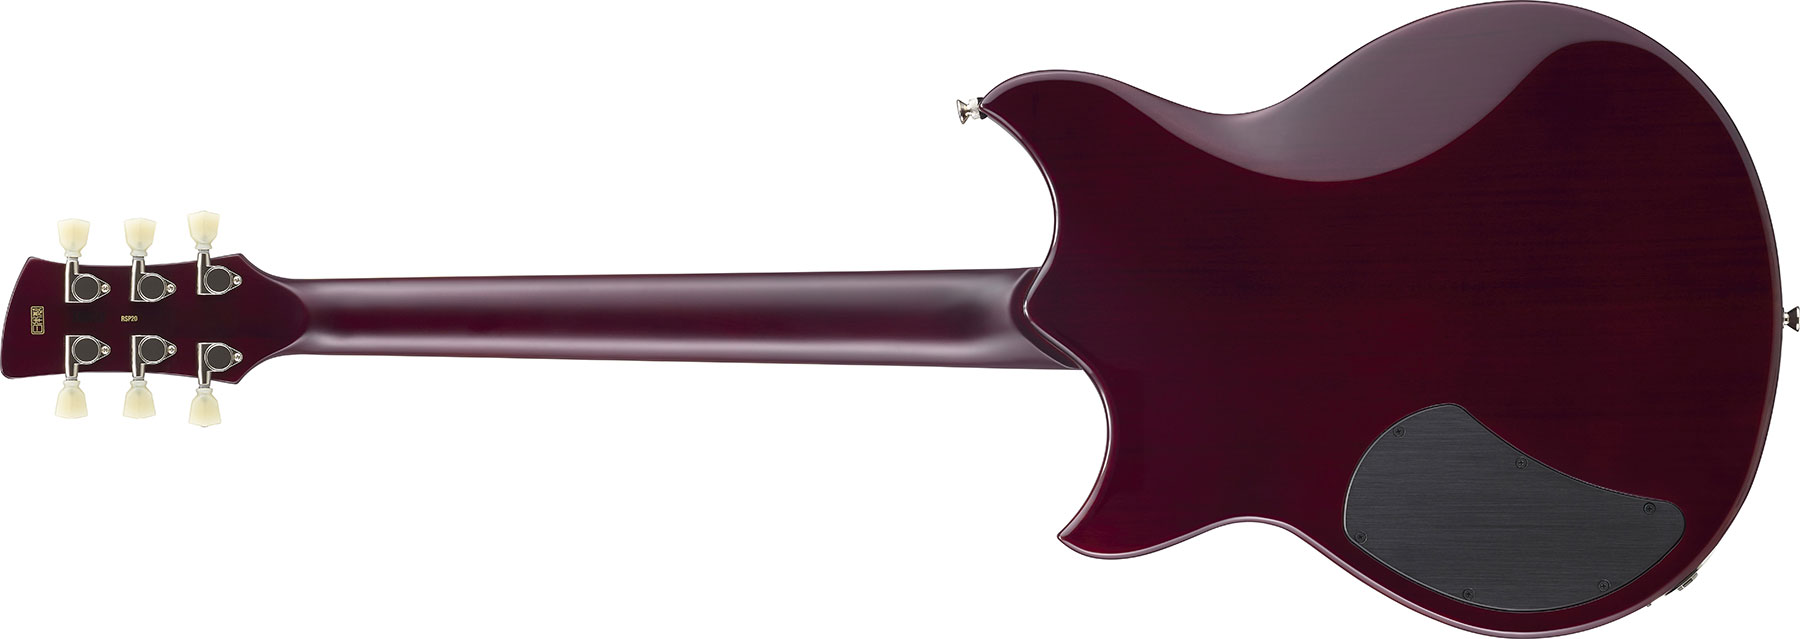 Yamaha Rss02t Revstar Standard 2p90 Ht Rw - Black - Guitarra eléctrica de doble corte. - Variation 2